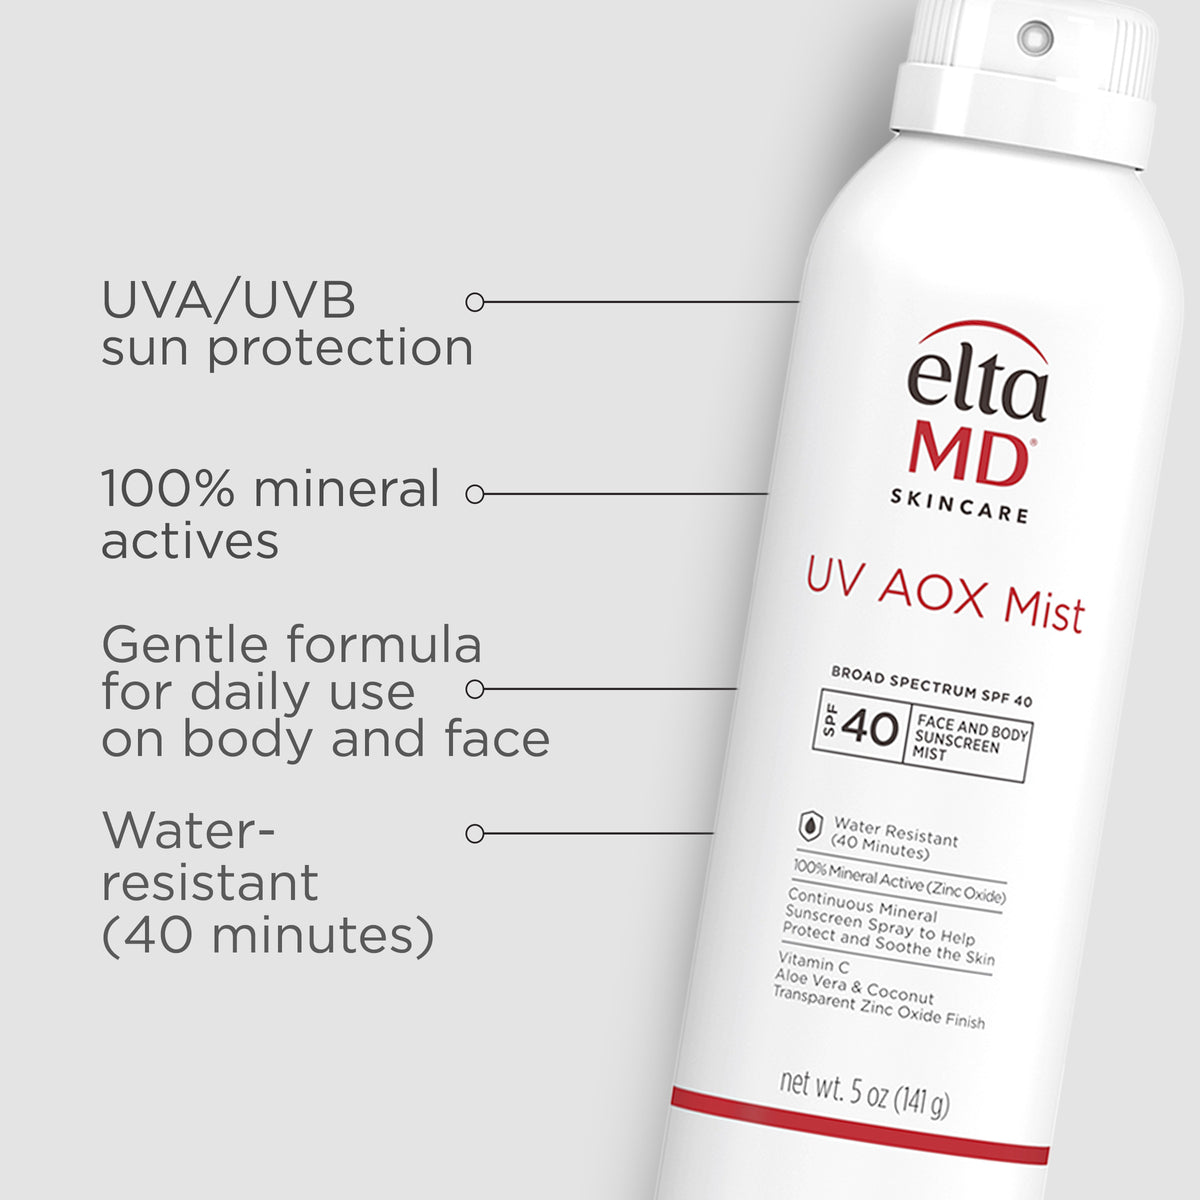 eltaMD UV AOX mist: a sunscreen spf 40